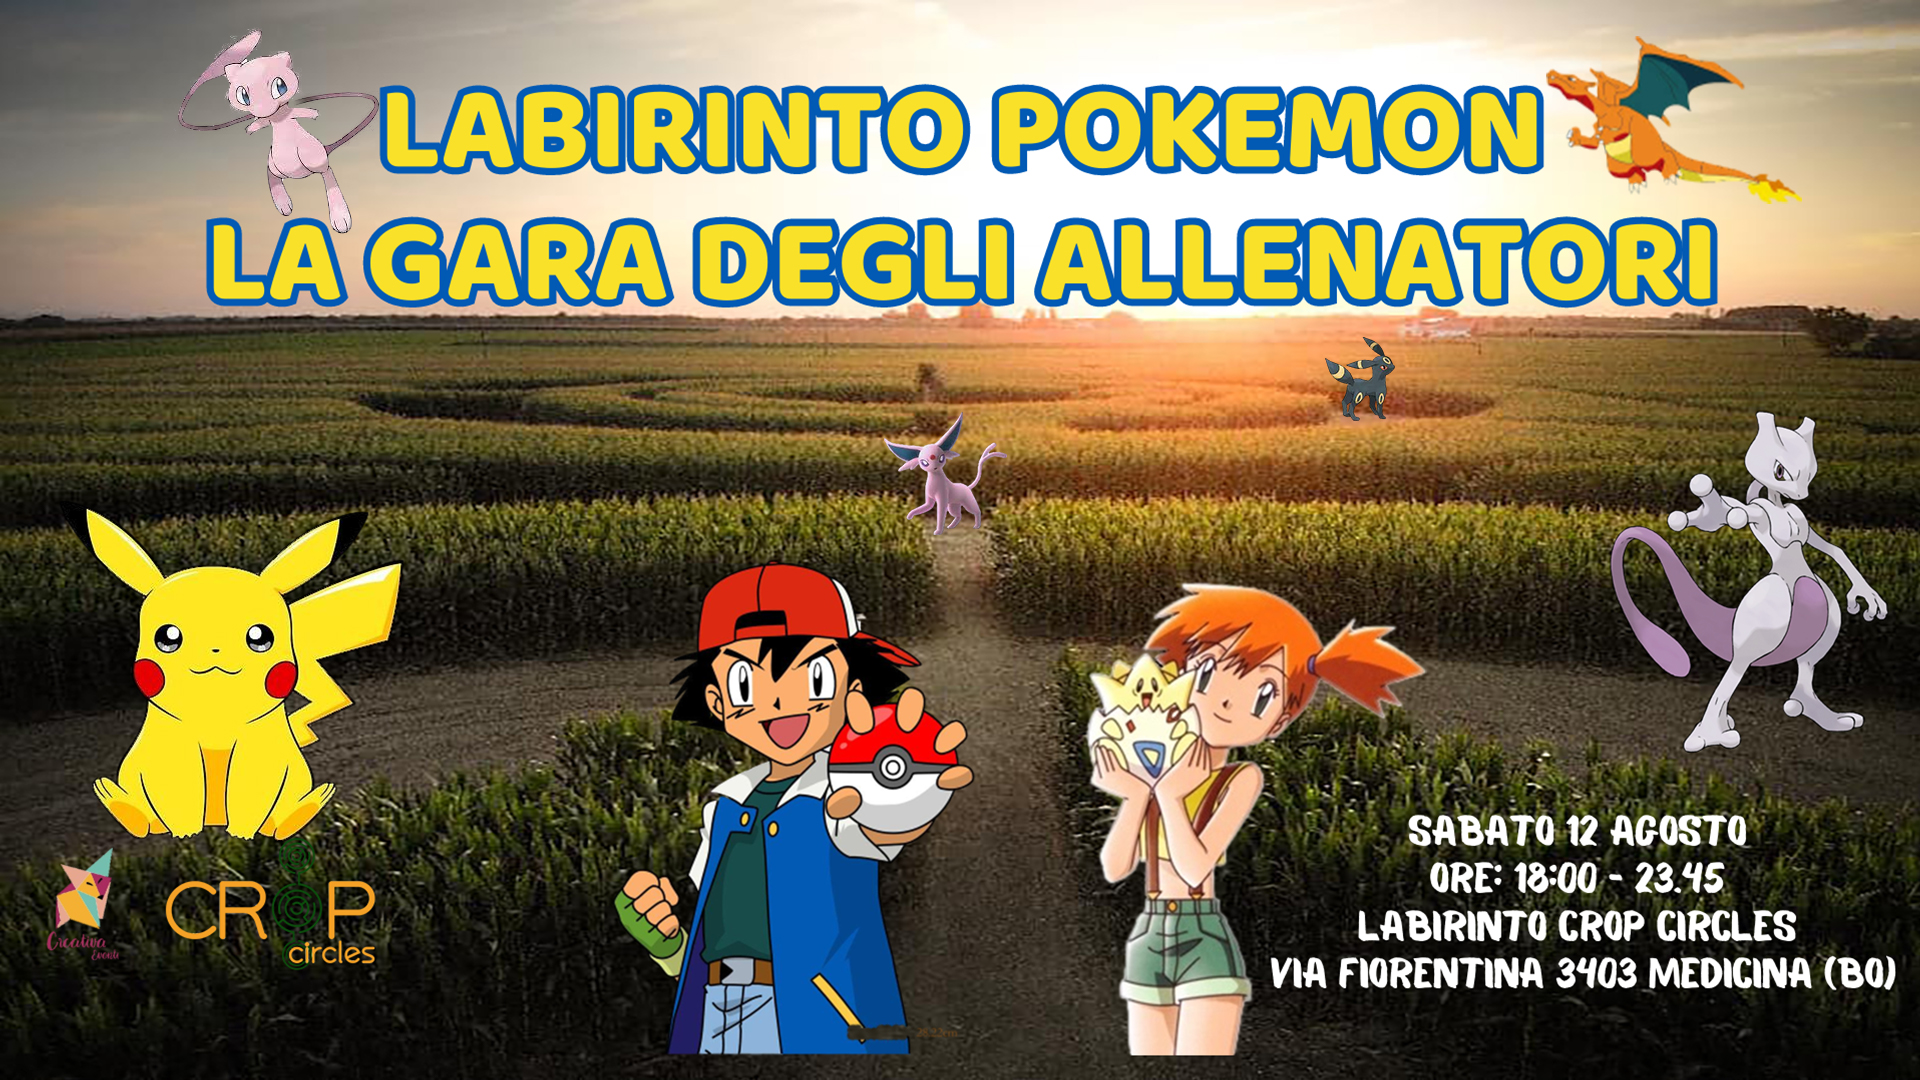 Labirinto Pokemon - La Gara degli Allenatori - Bologna Bimbi